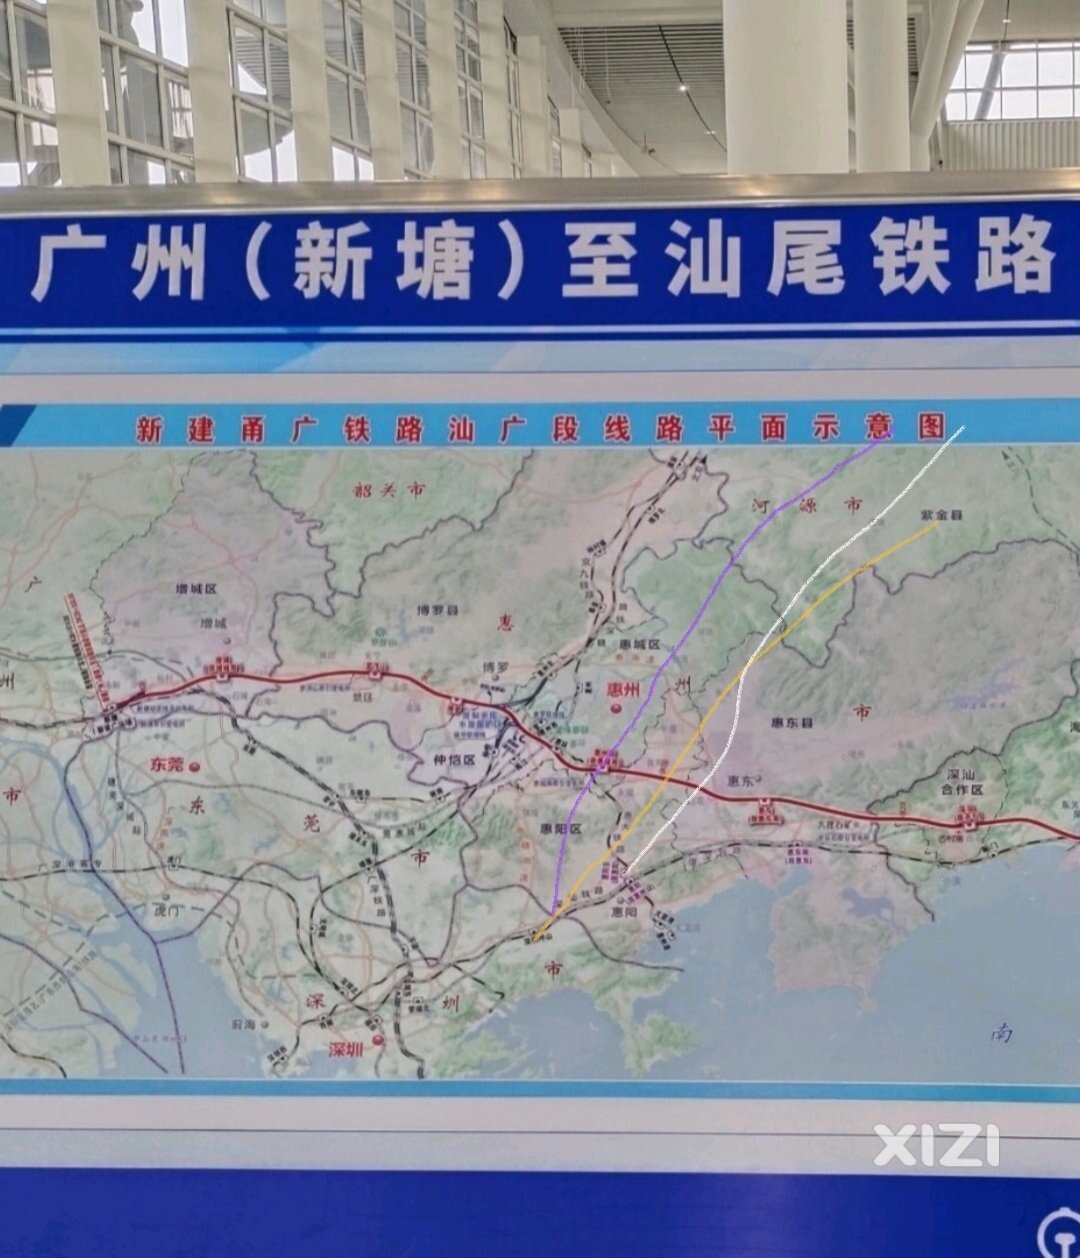 甬广高铁即将开通了。不知道后面的深河高铁惠州段走向会怎么走和设站